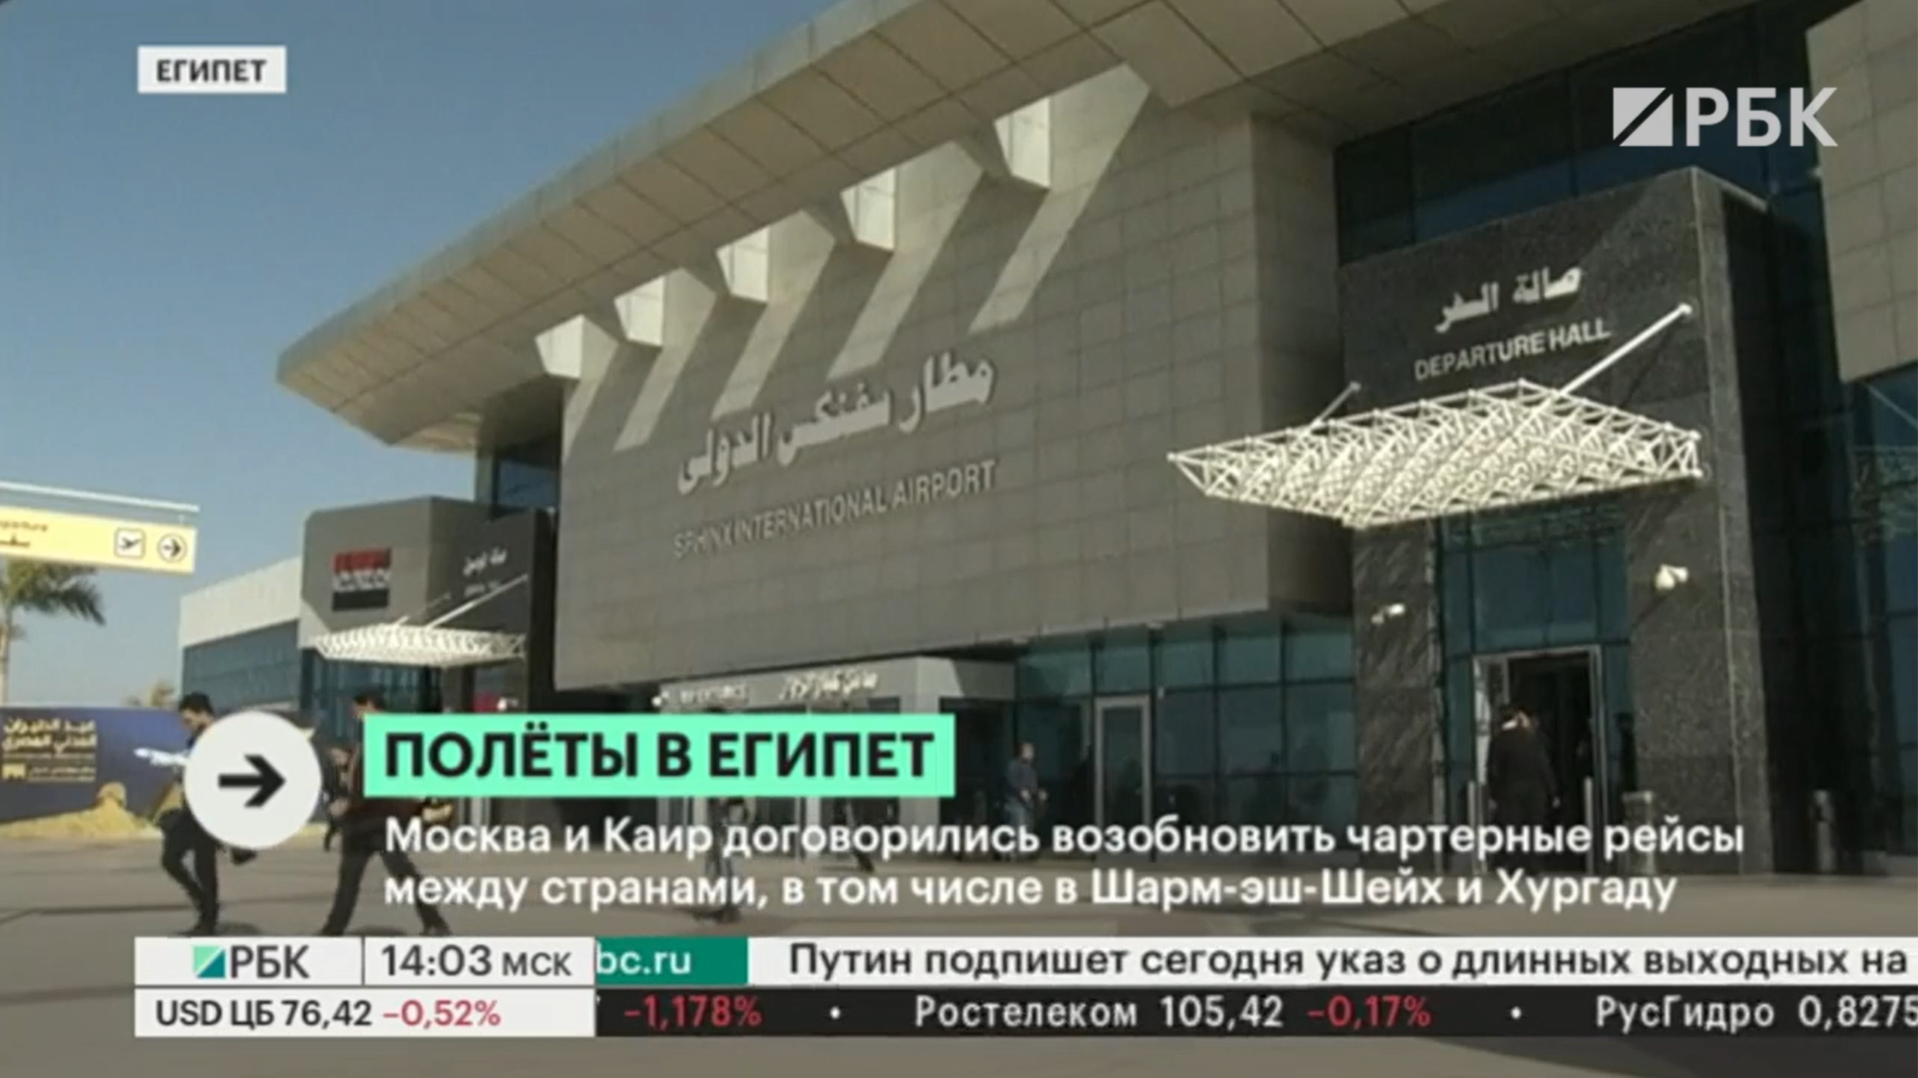 «Аэрофлот» назвал дату начала полетов из Москвы на курорты Египта"/>













